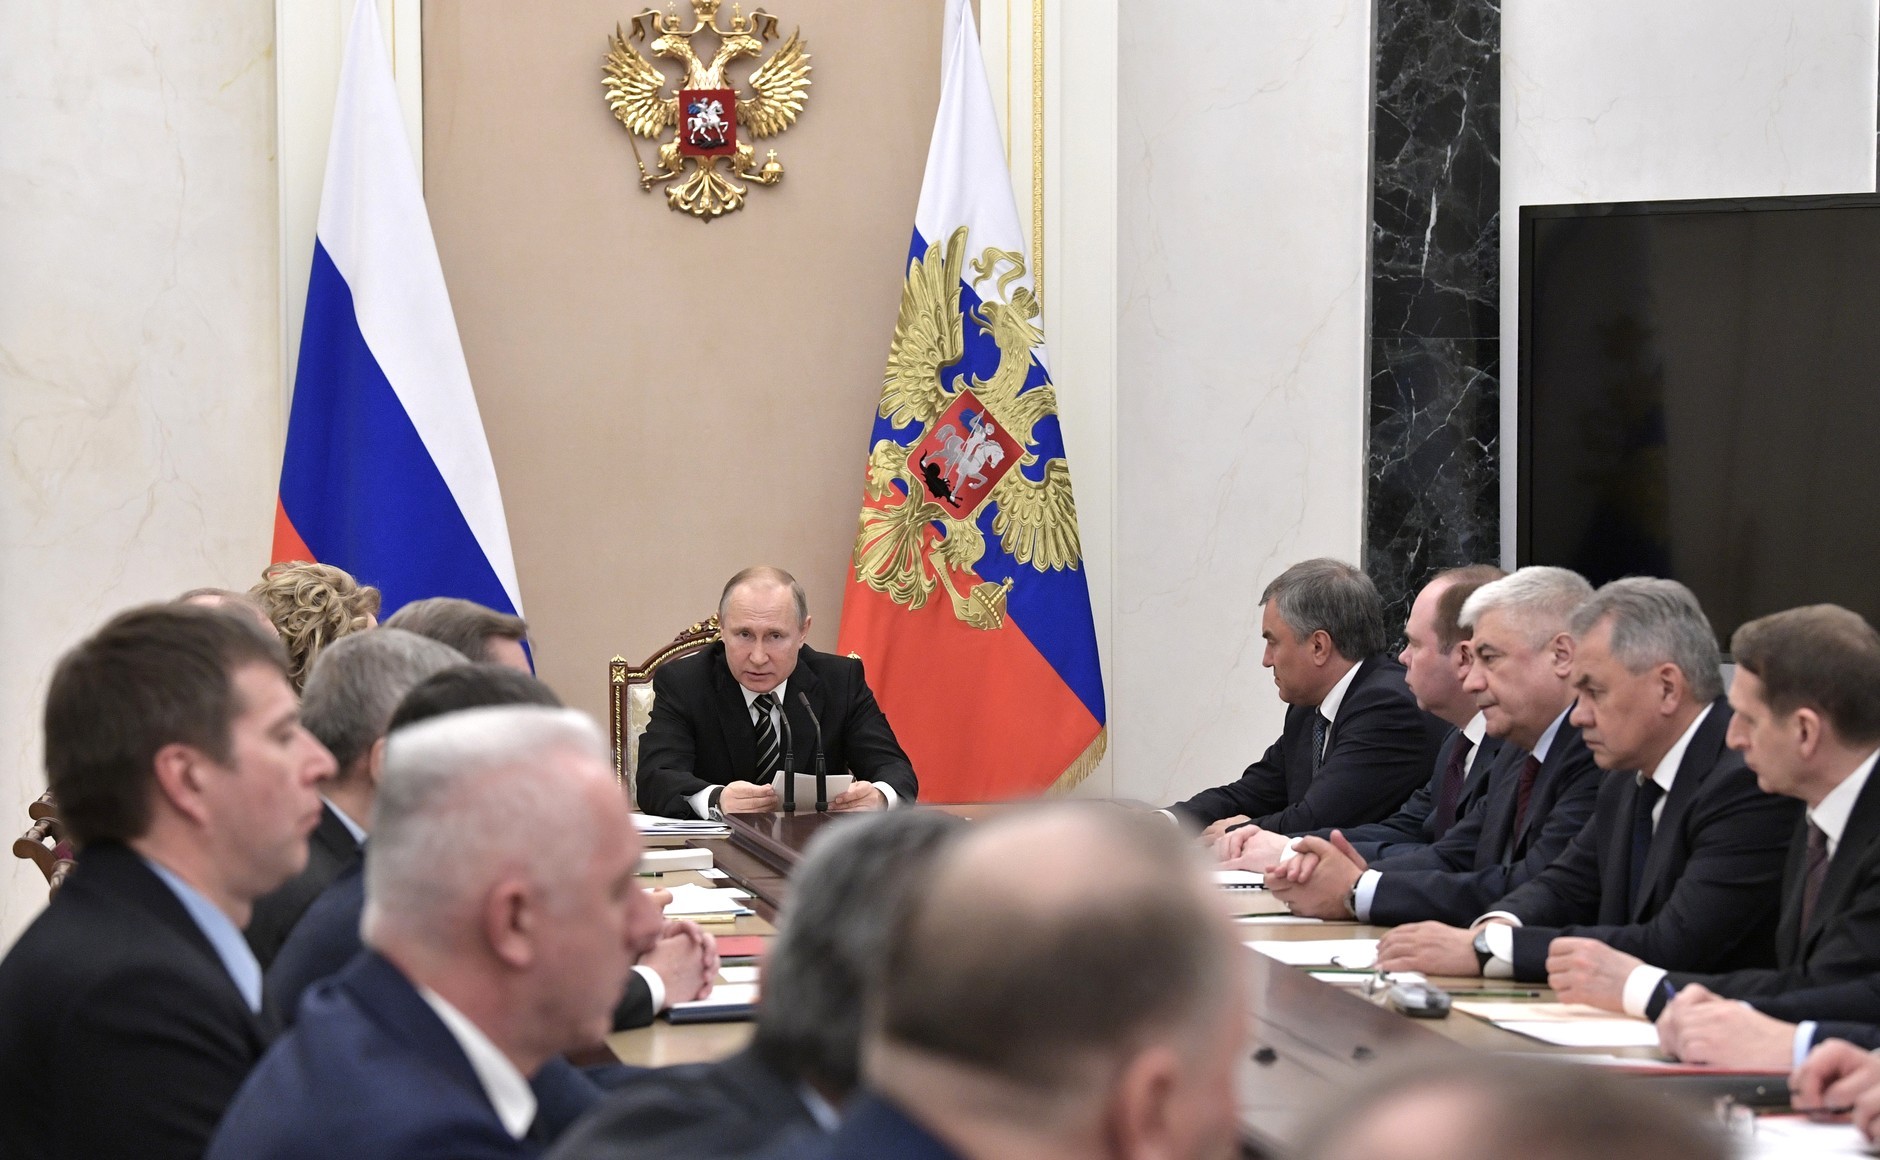 Выступления совета безопасности. Заседание совета безопасности РФ. Совет безопасности РФ 2021.